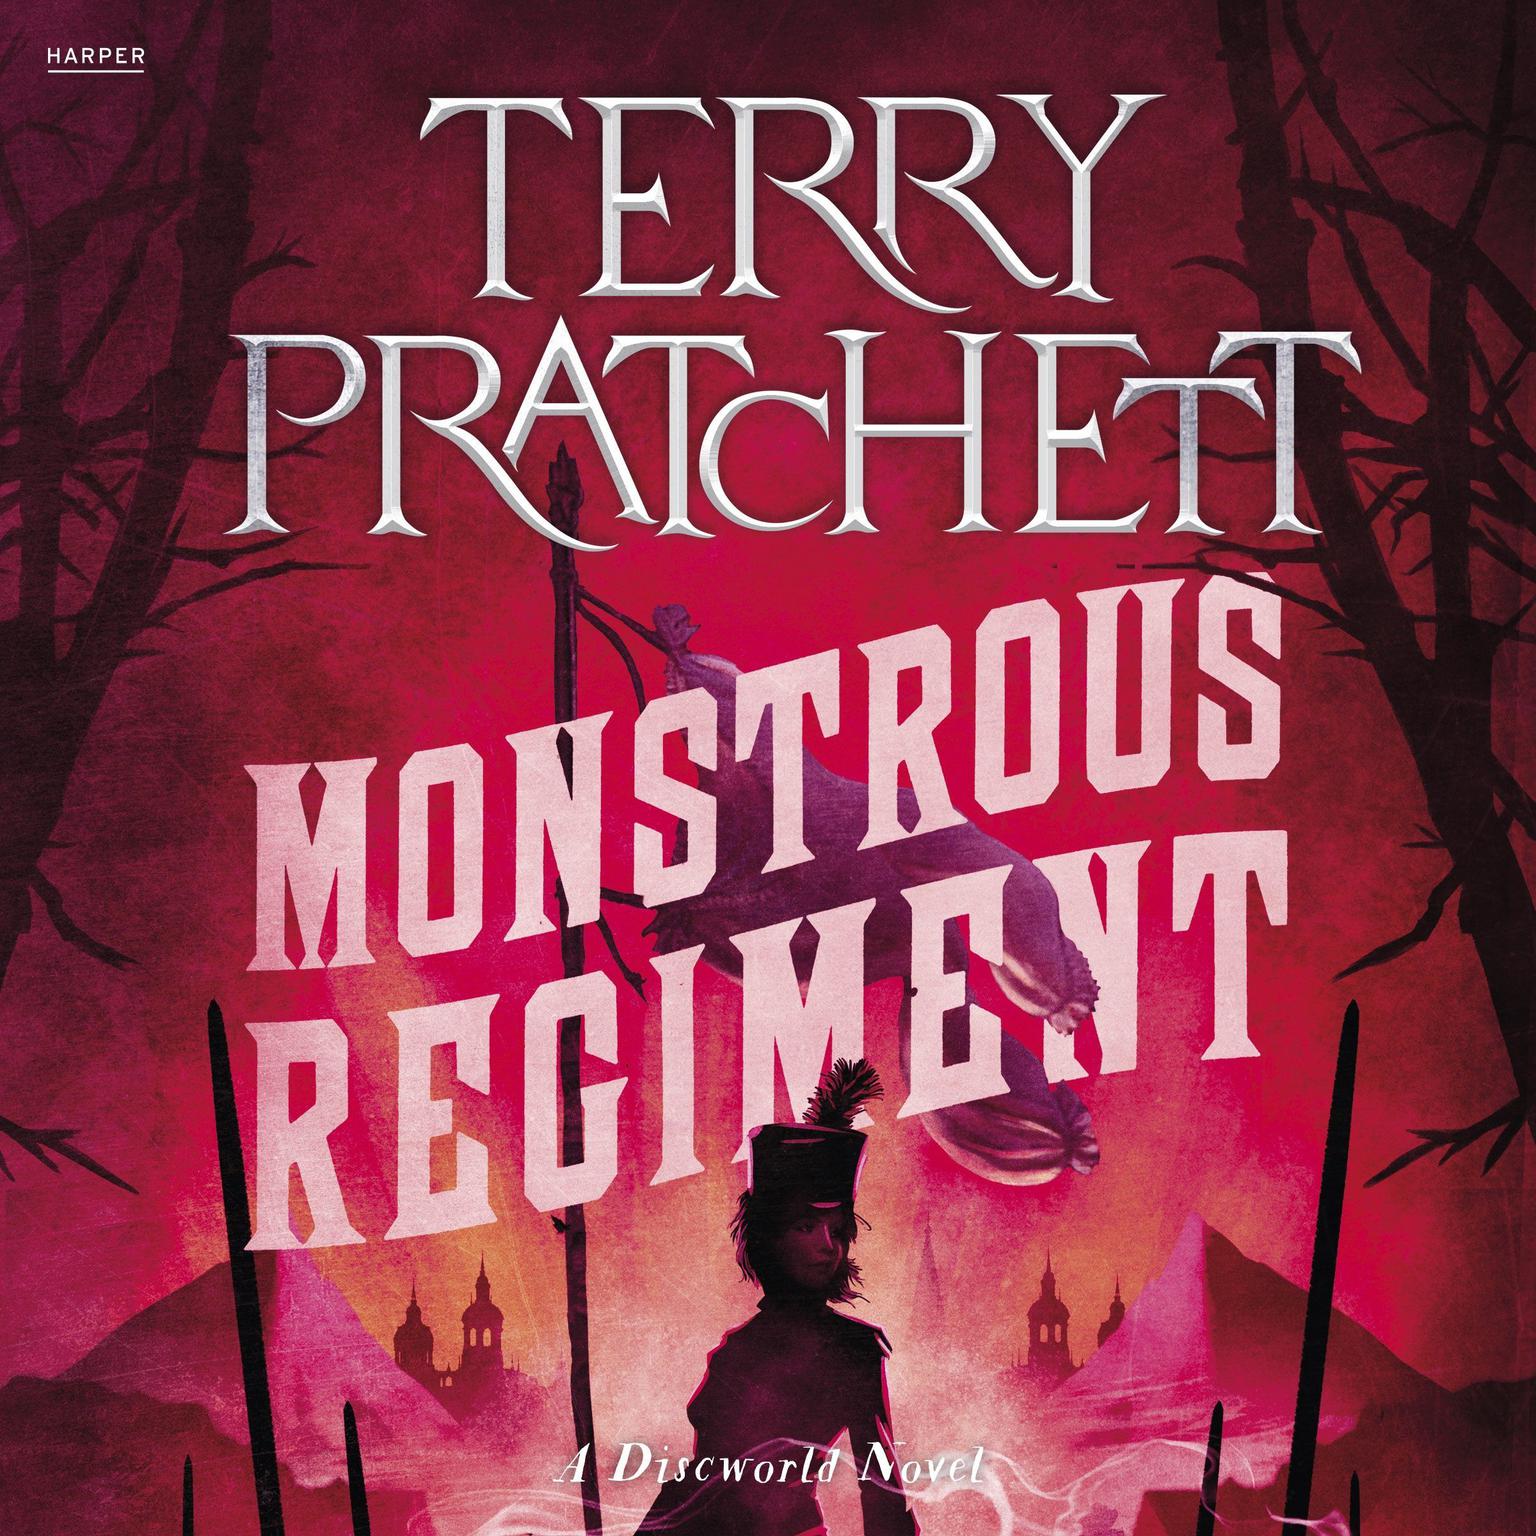 Monstrous Regiment: A Discworld Novel Audiobook, by Terry Pratchett